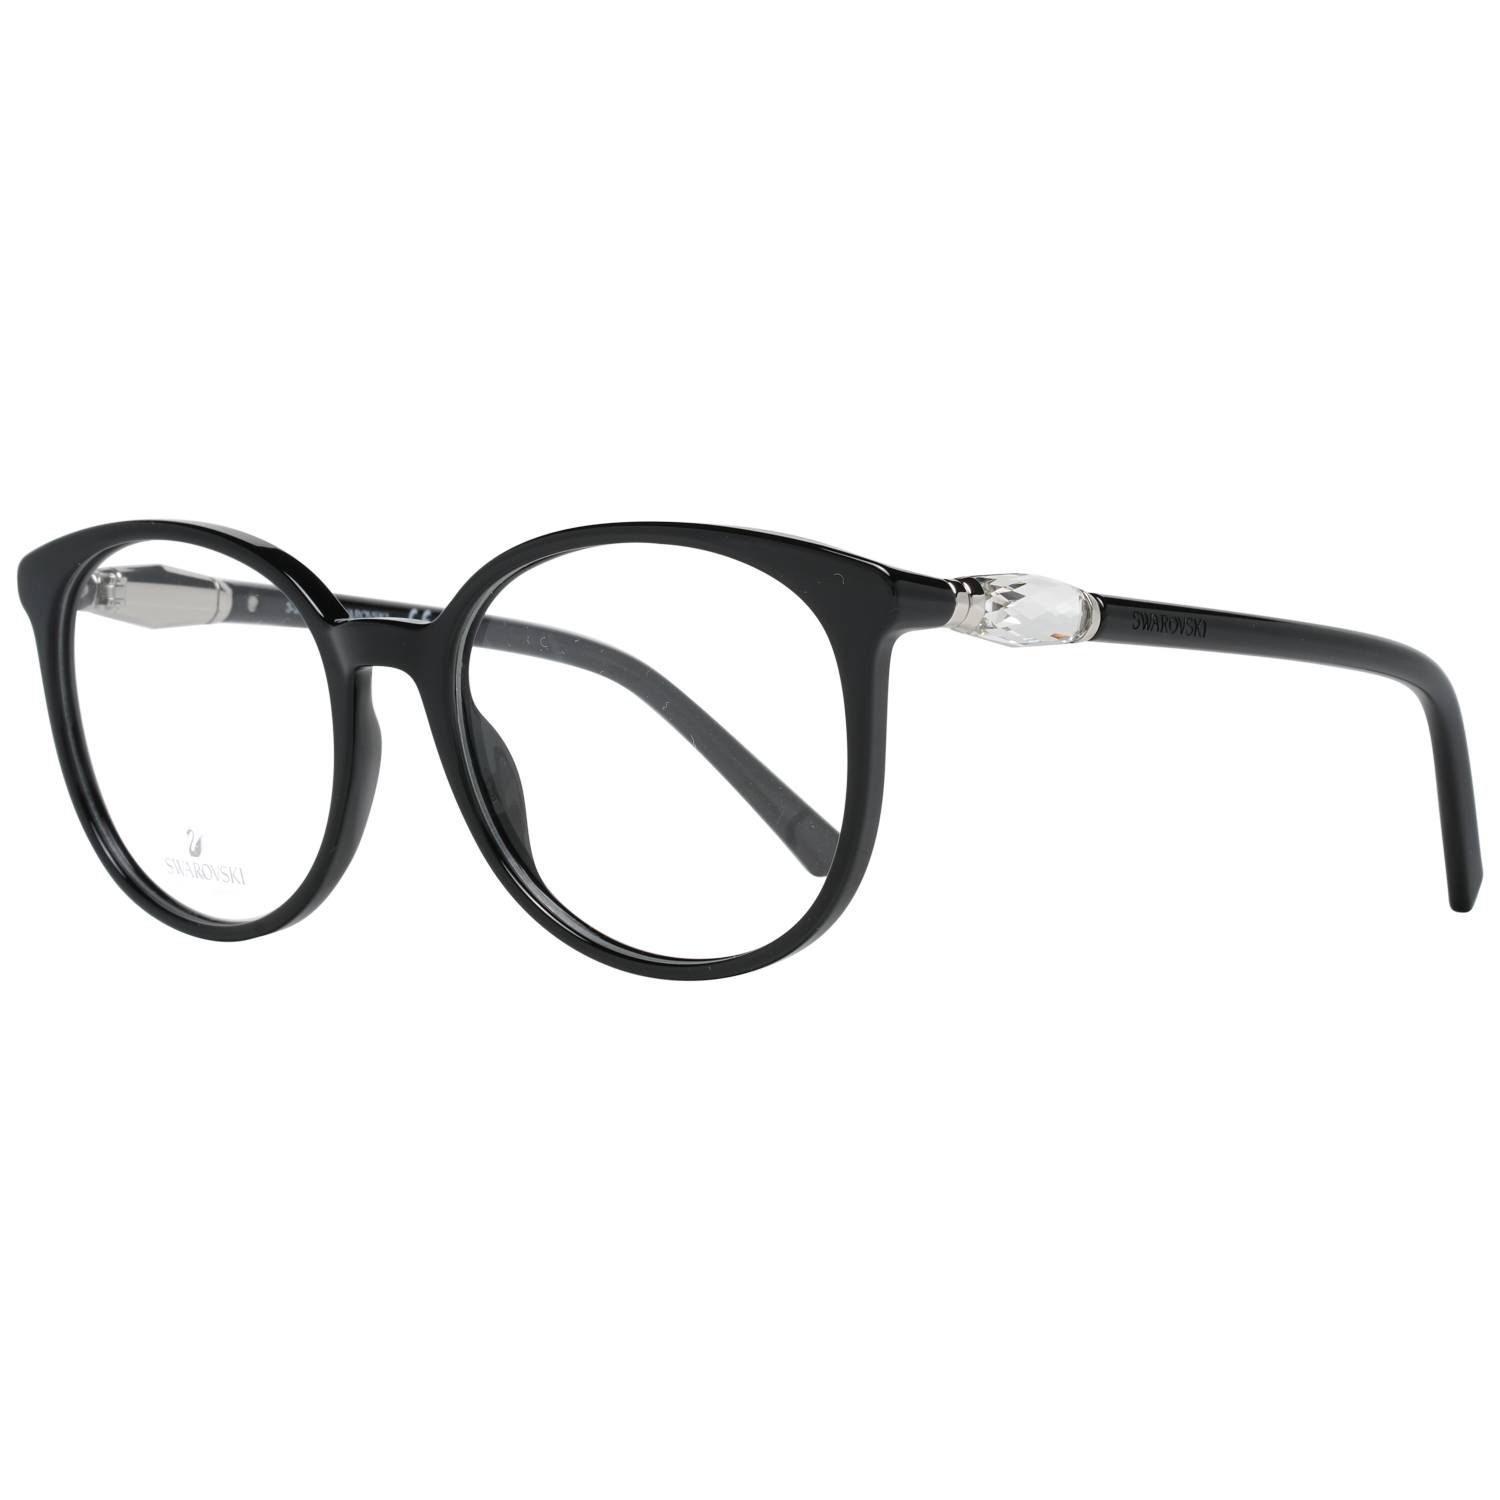 Swarovski Frames Swarovski Women Glasses Optical Frame SK5310 001 52 Eyeglasses Eyewear UK USA Australia 